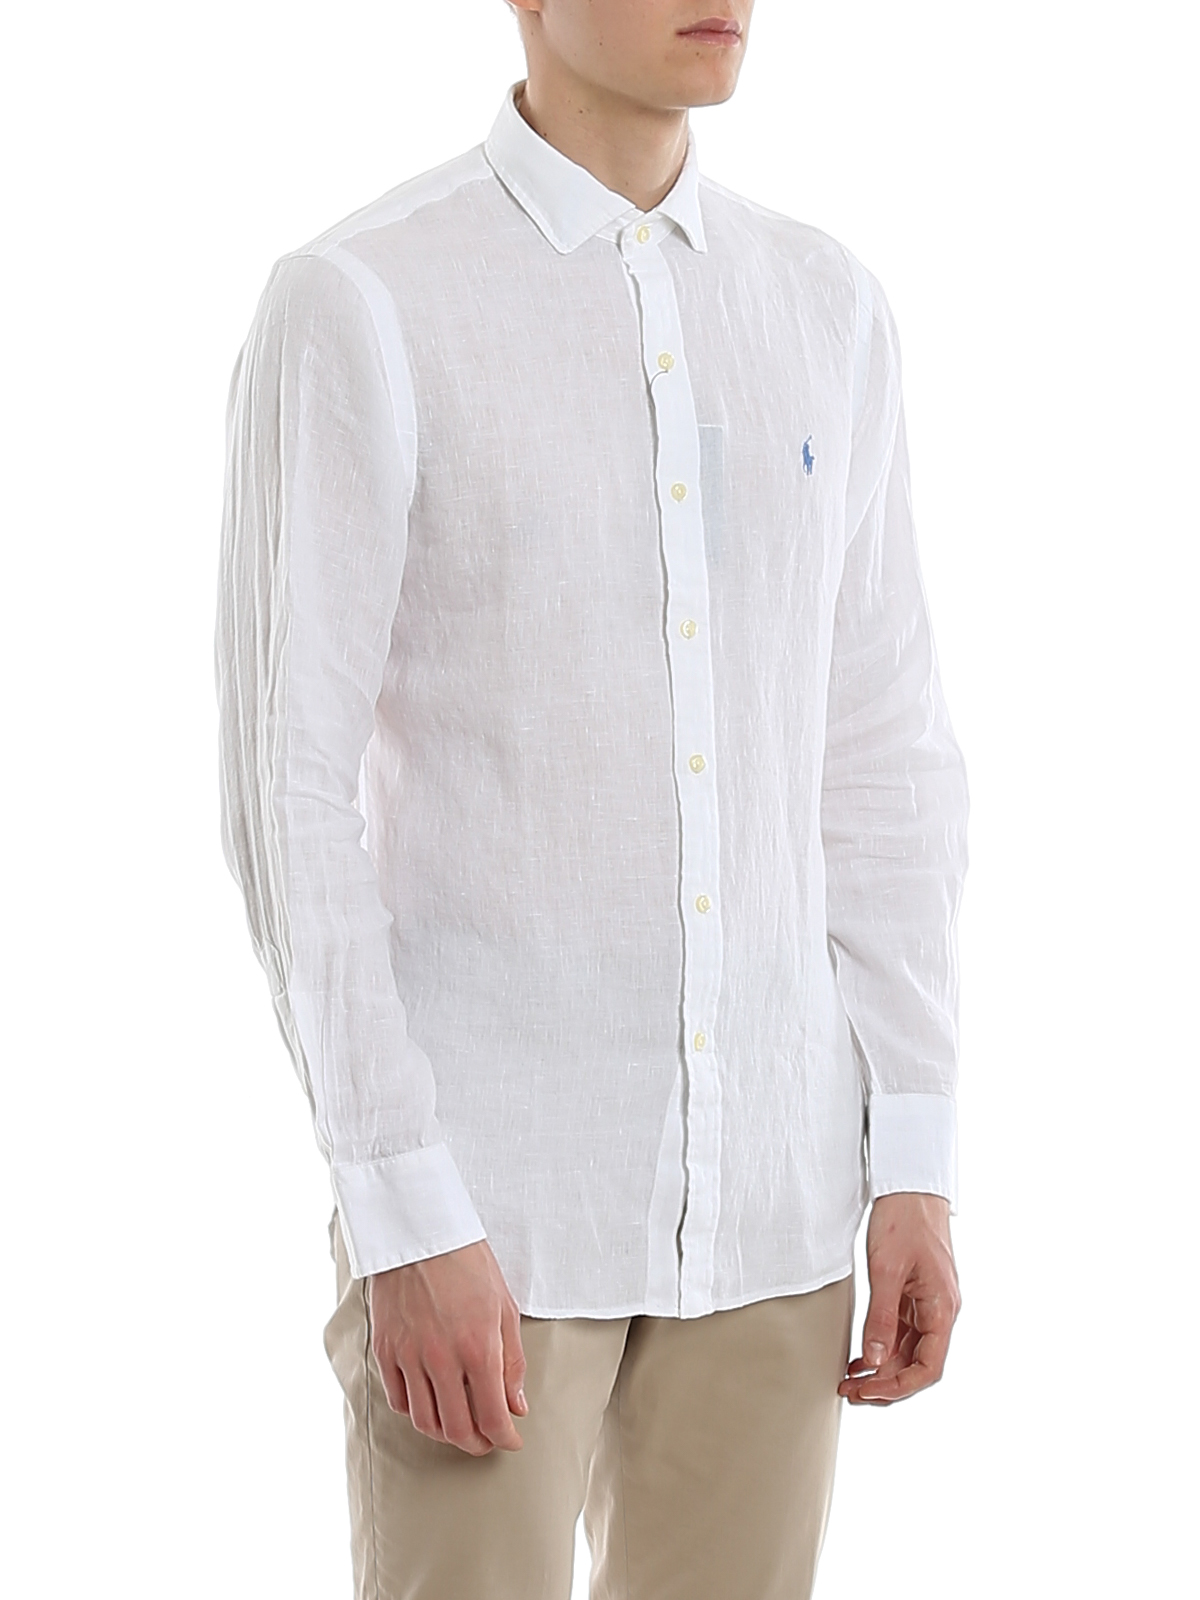 Shirts Polo Ralph Lauren - White linen shirt - 710795426006